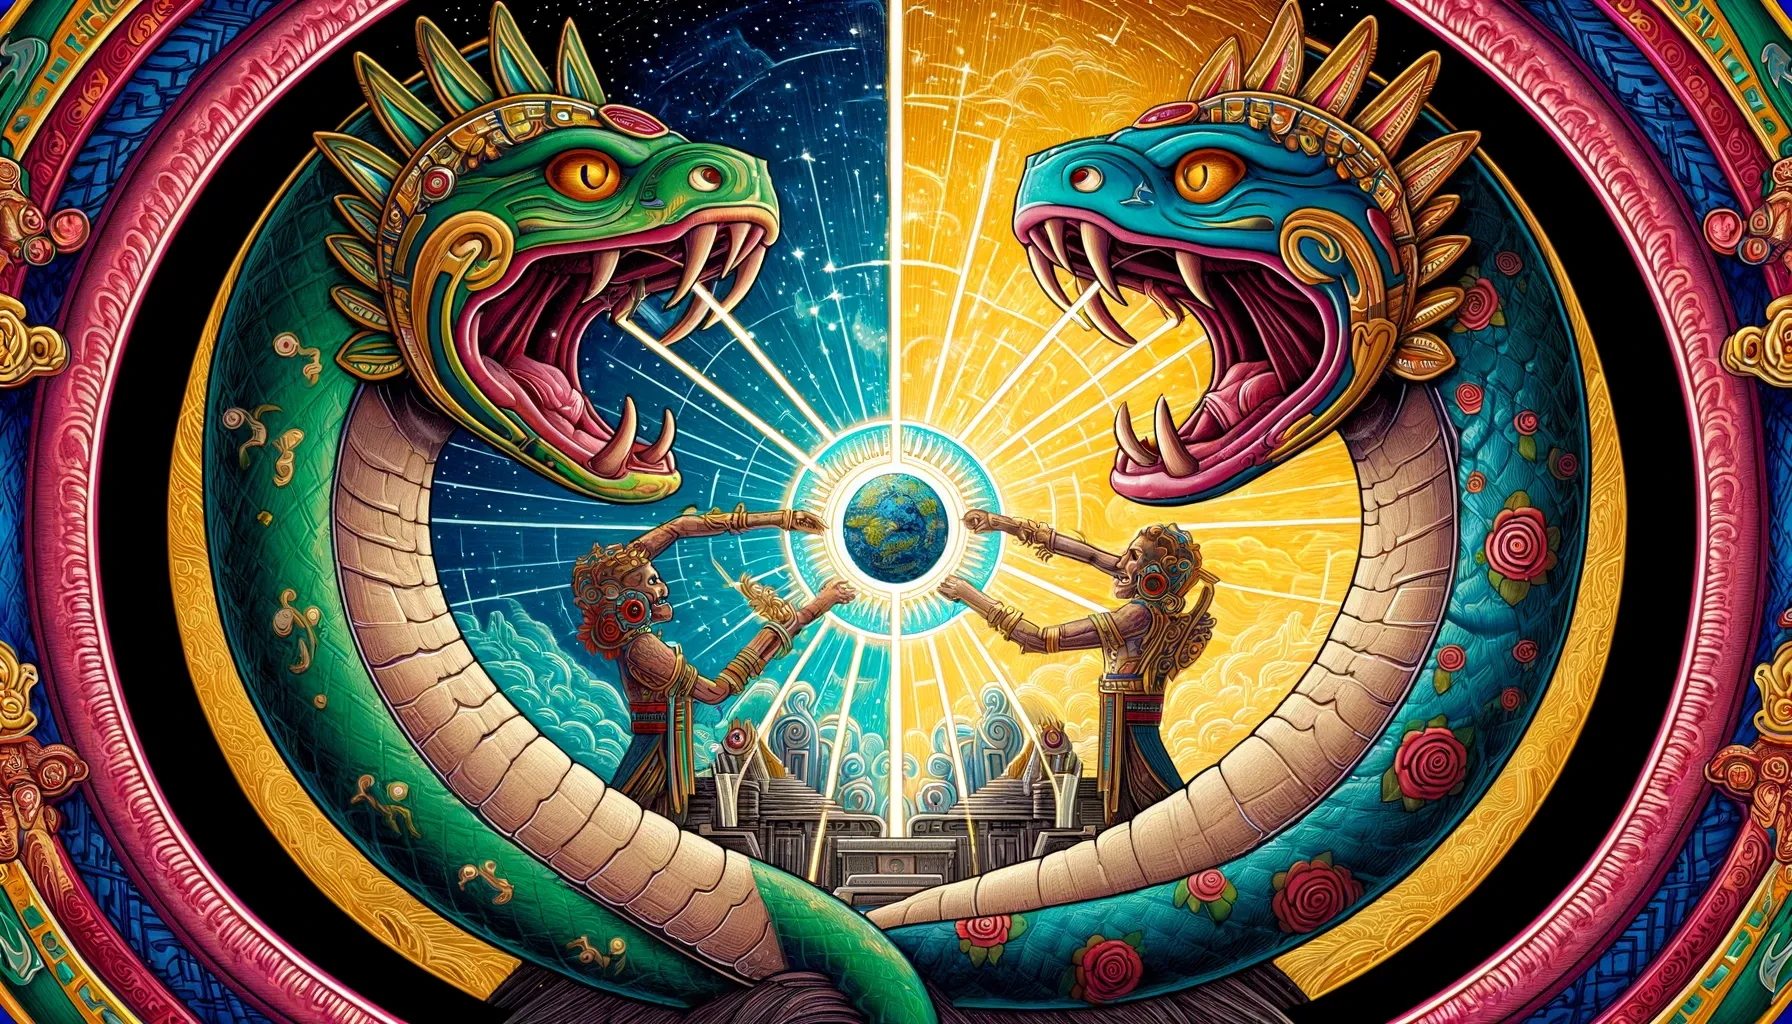 Ilustración de Quetzalcóatl y Tezcatlipoca en forma de serpientes, partiendo al monstruo Cipactli para formar el cielo y la tierra, con motivos celestiales y terrestres.